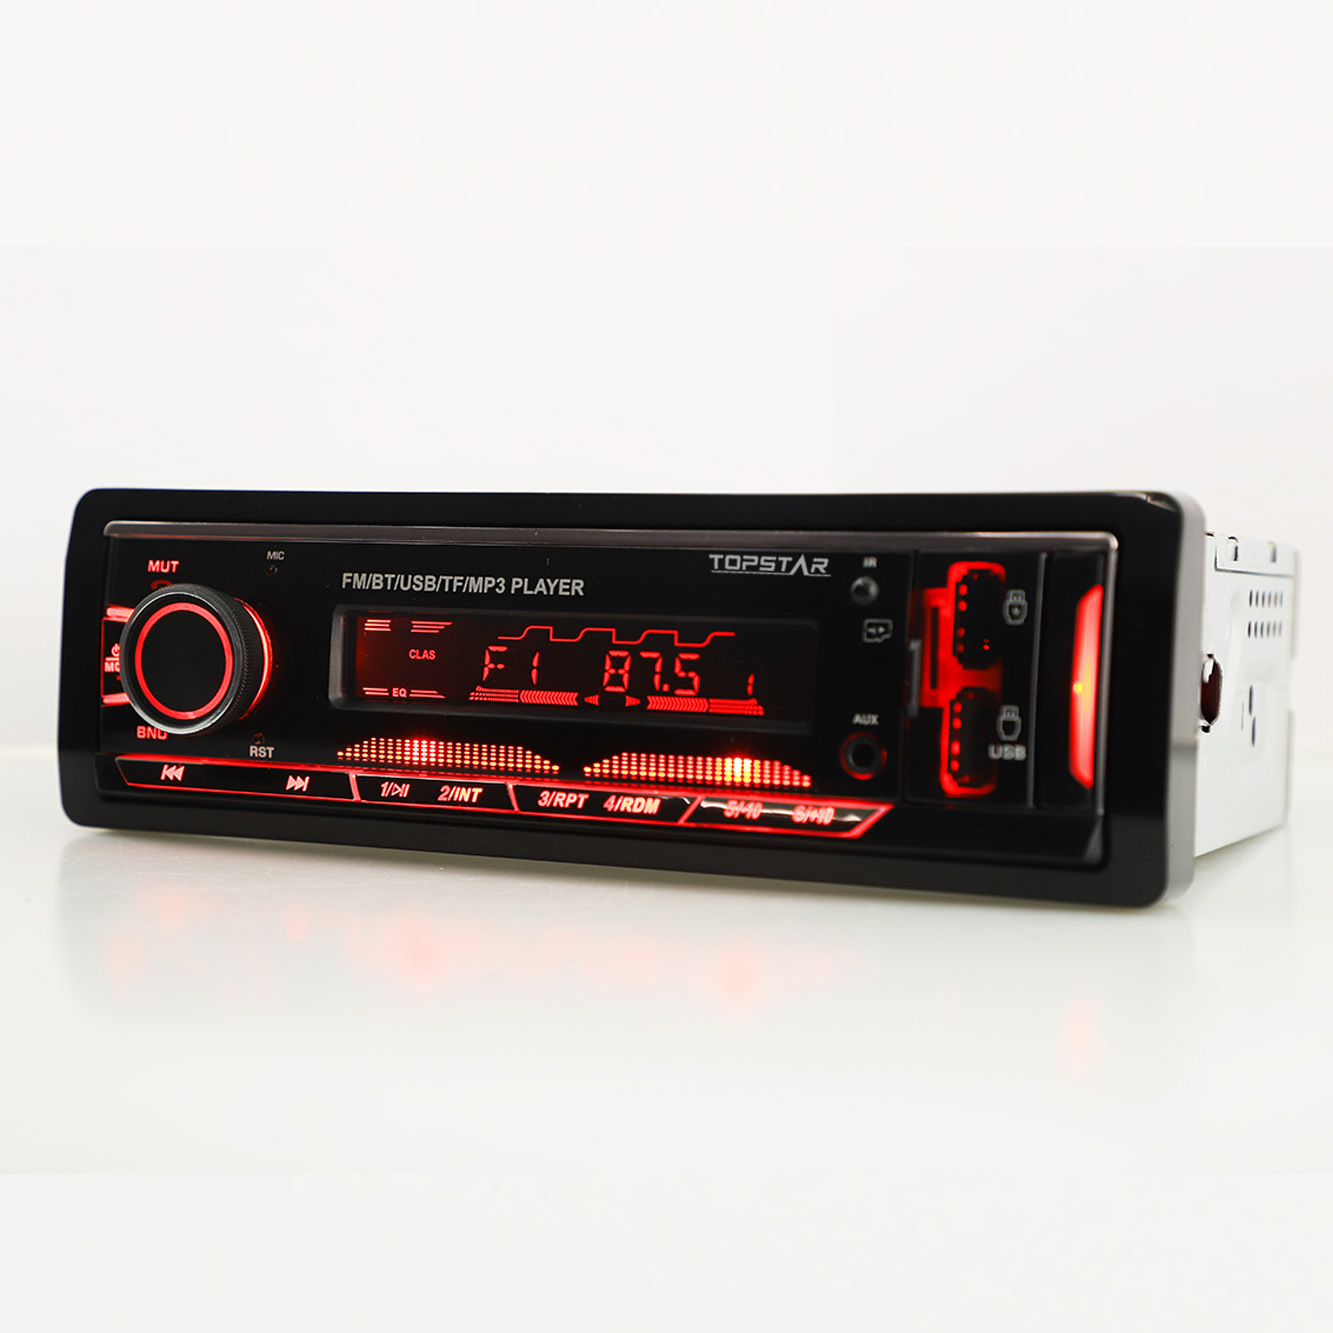 السيارات الصوت والفيديو الصوت راديو السيارة لوحة ثابتة لاعب سيارة ستيريو مشغل MP3 سيارة فيديو صوت السيارة اكسسوارات السيارات متعدد الألوان سيارة مشغل MP3